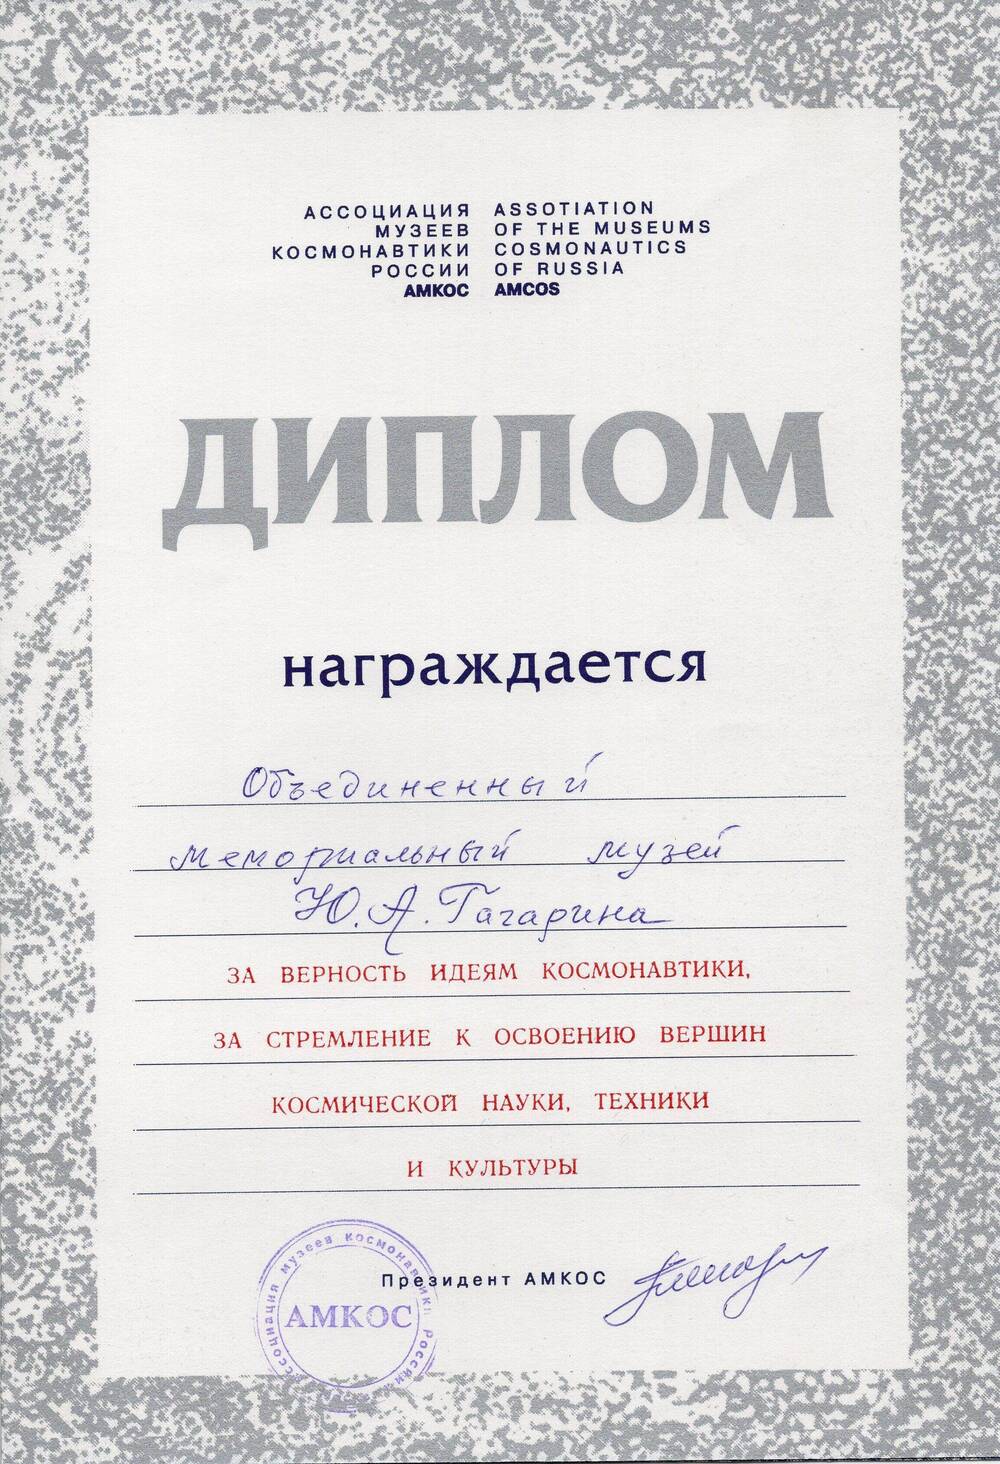 Диплом о награждении объединенного мемориального музея Ю.А. Гагарина за верность идеям космонавтики.